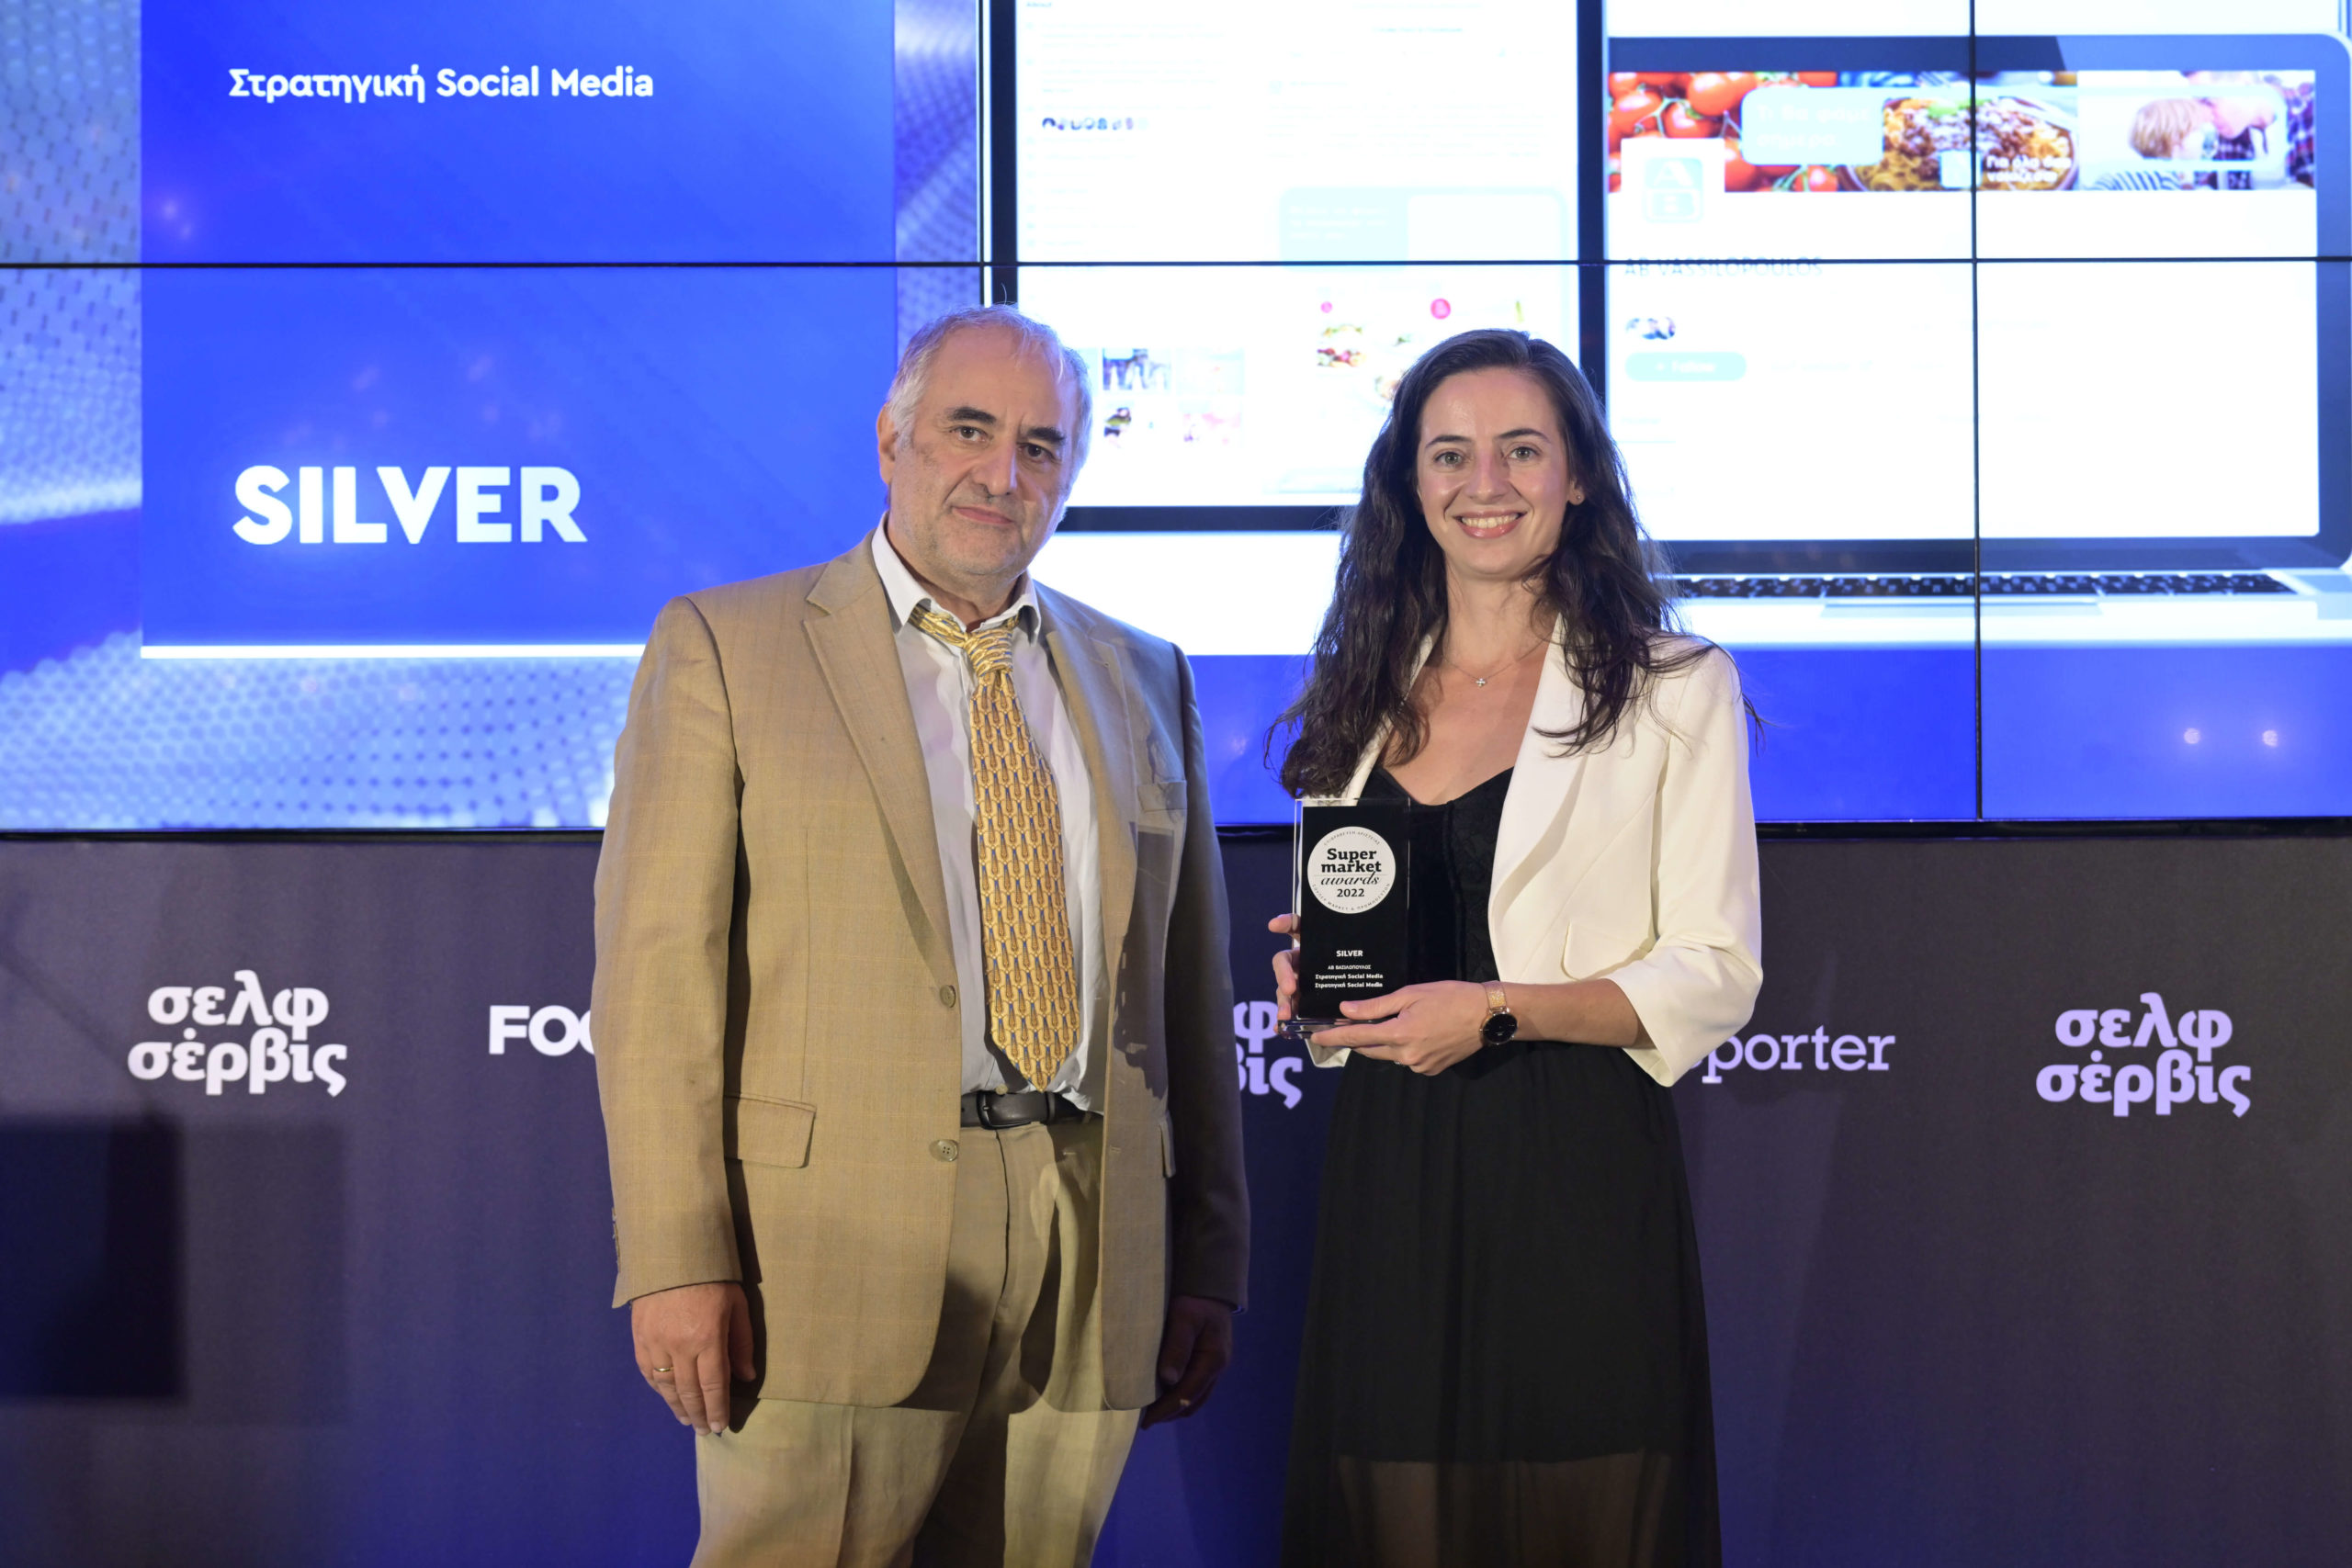 Το Silver βραβείο στην κατηγορία Στρατηγική́ social media παραλαμβάνει η Πολυξένη Τζέκα, Digital Marketing Supervisor ΑΒ Βασιλόπουλος.